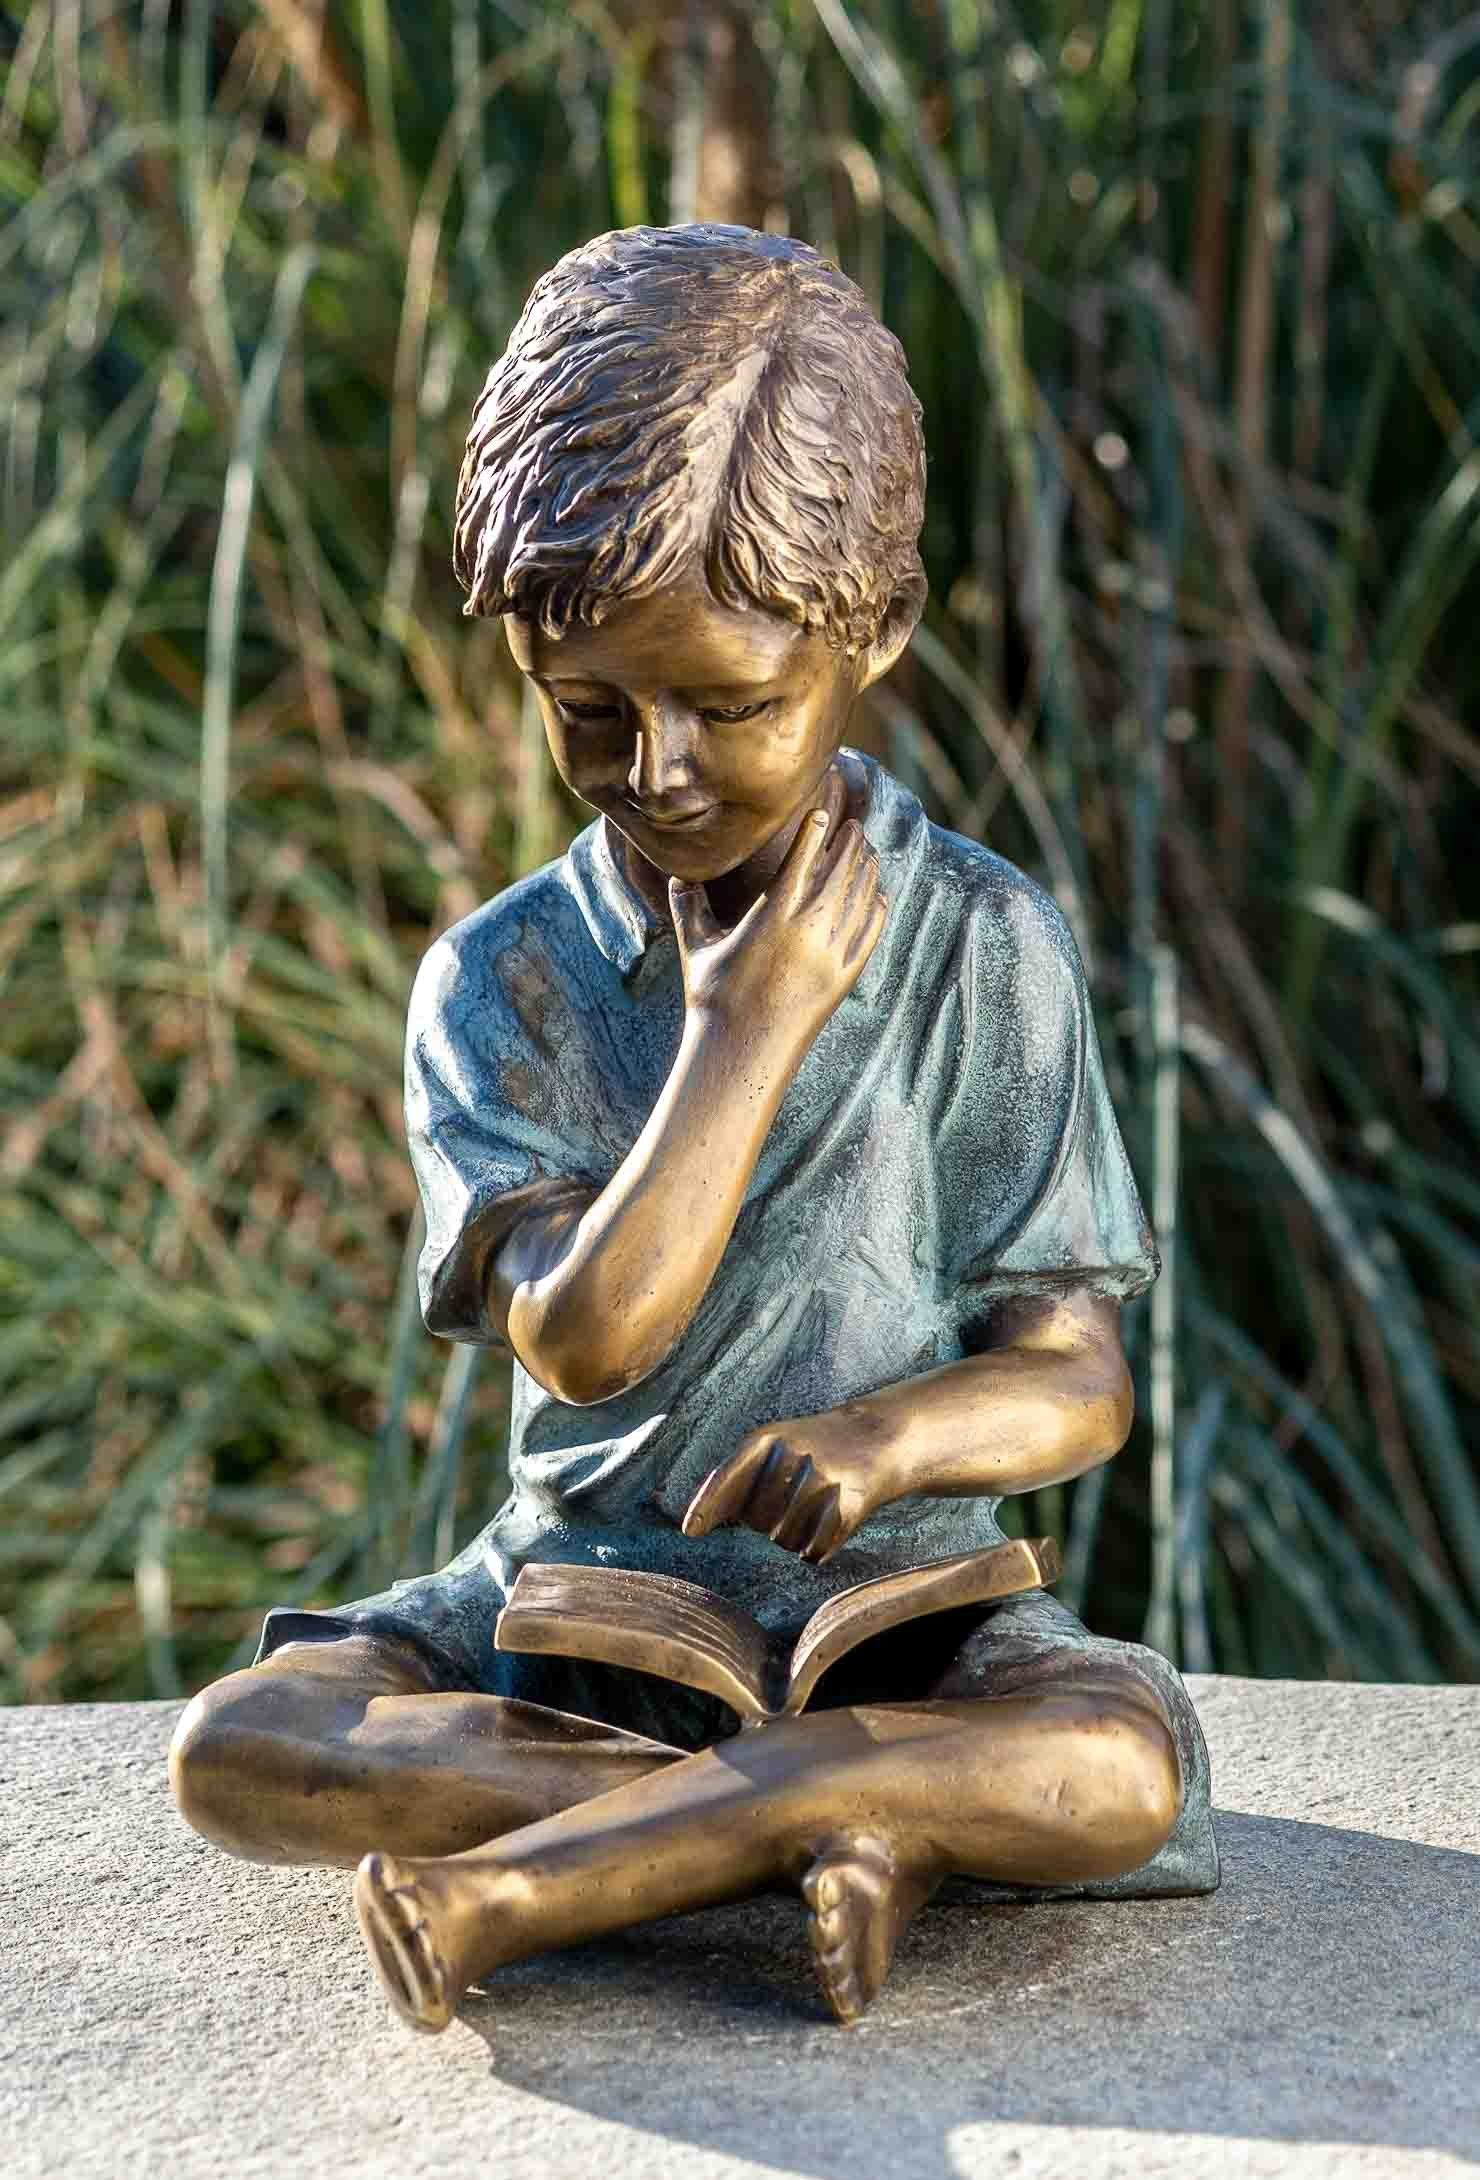 IDYL Gartenfigur IDYL Bronze-Skulptur Lesender Bronze – Frost, Regen werden Die patiniert. Modelle gegen witterungsbeständig gegossen robust in Junge, in – Hand Langlebig Wachsausschmelzverfahren Bronze und UV-Strahlung. und von – sehr